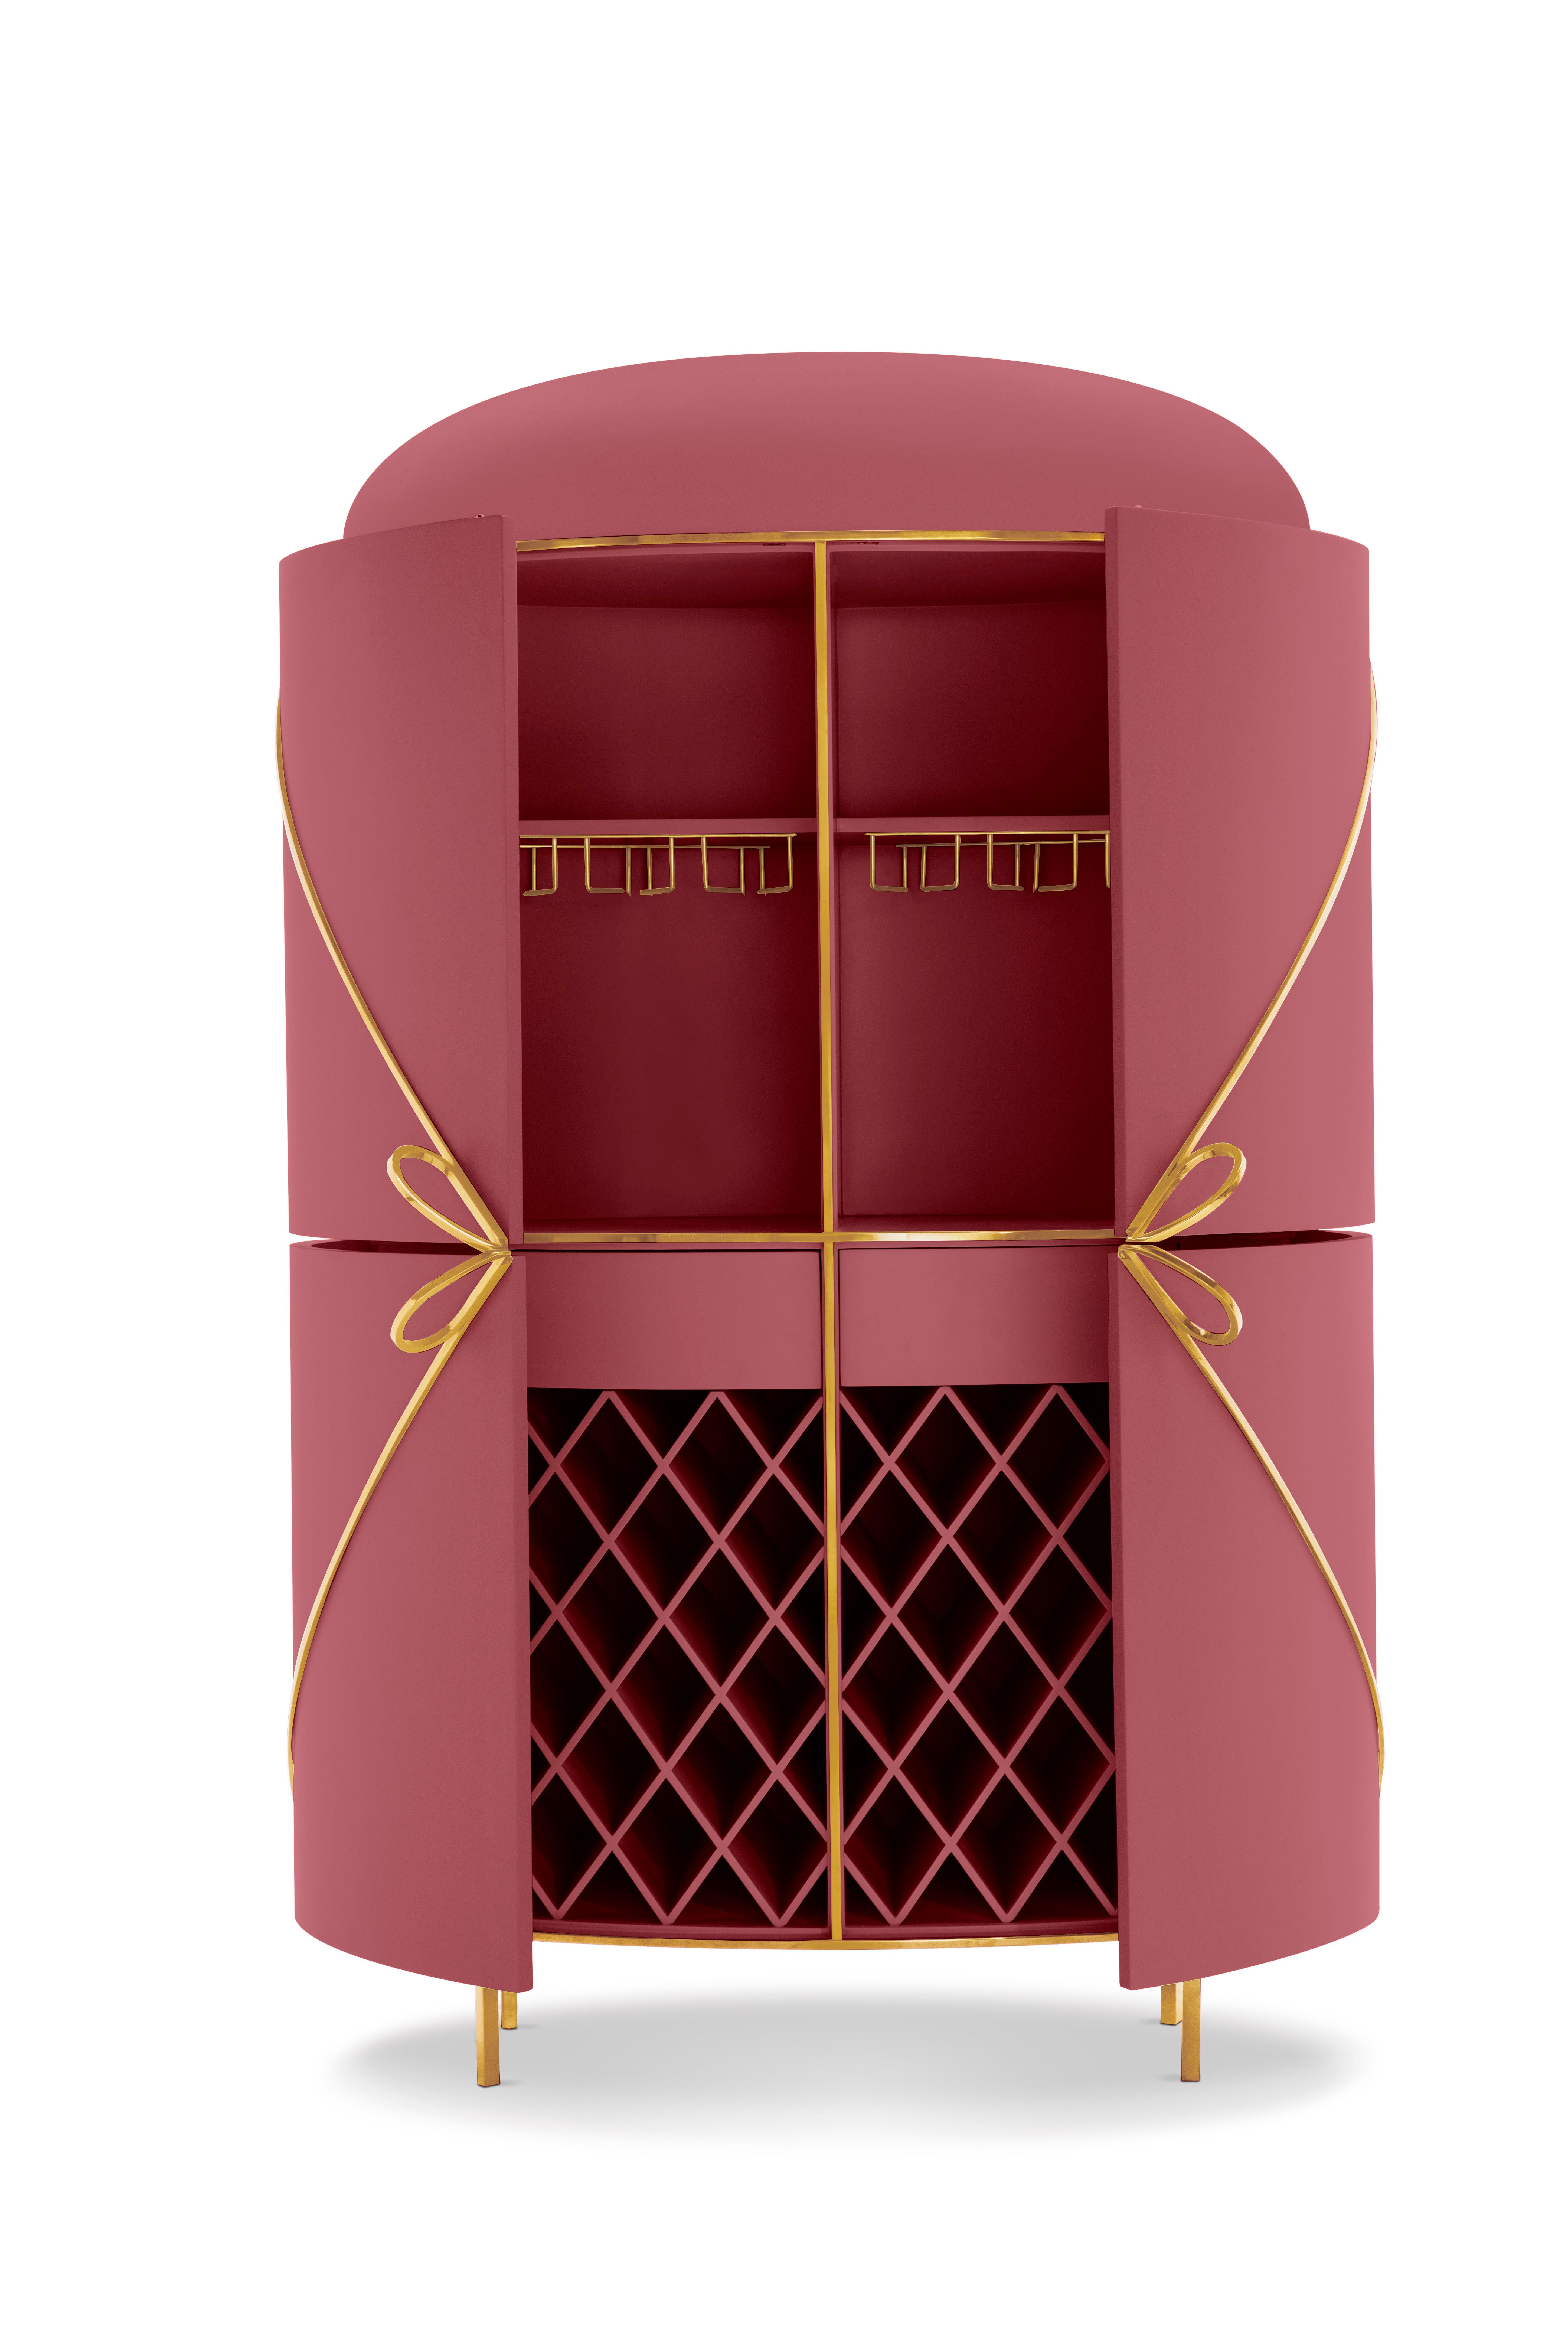 88 Secrets Rose Pink Bar Cabinet with Gold Trims von Nika Zupanc ist ein rosafarbener Barschrank mit sinnlichen, femininen Linien und luxuriösen Metallverzierungen in Gold. Ein Blickfang in jedem Innenraum!

Nika Zupanc, eine auffallend renommierte